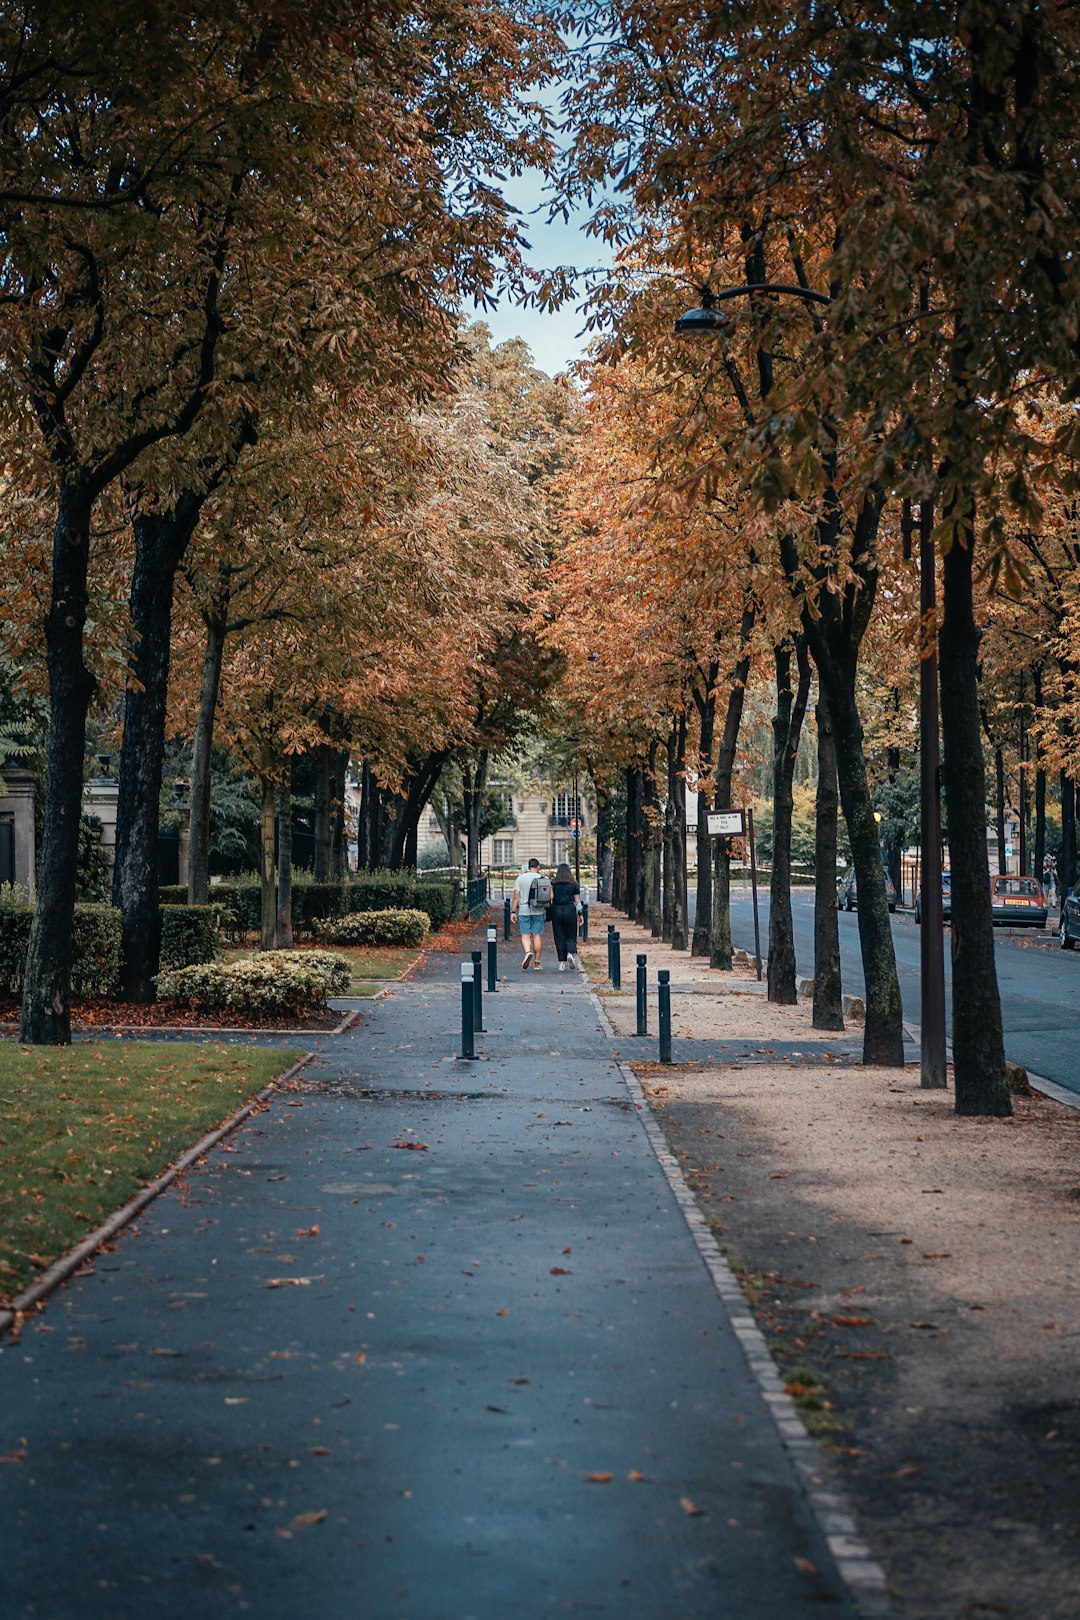 people walking on sidewalk near trees during daytime